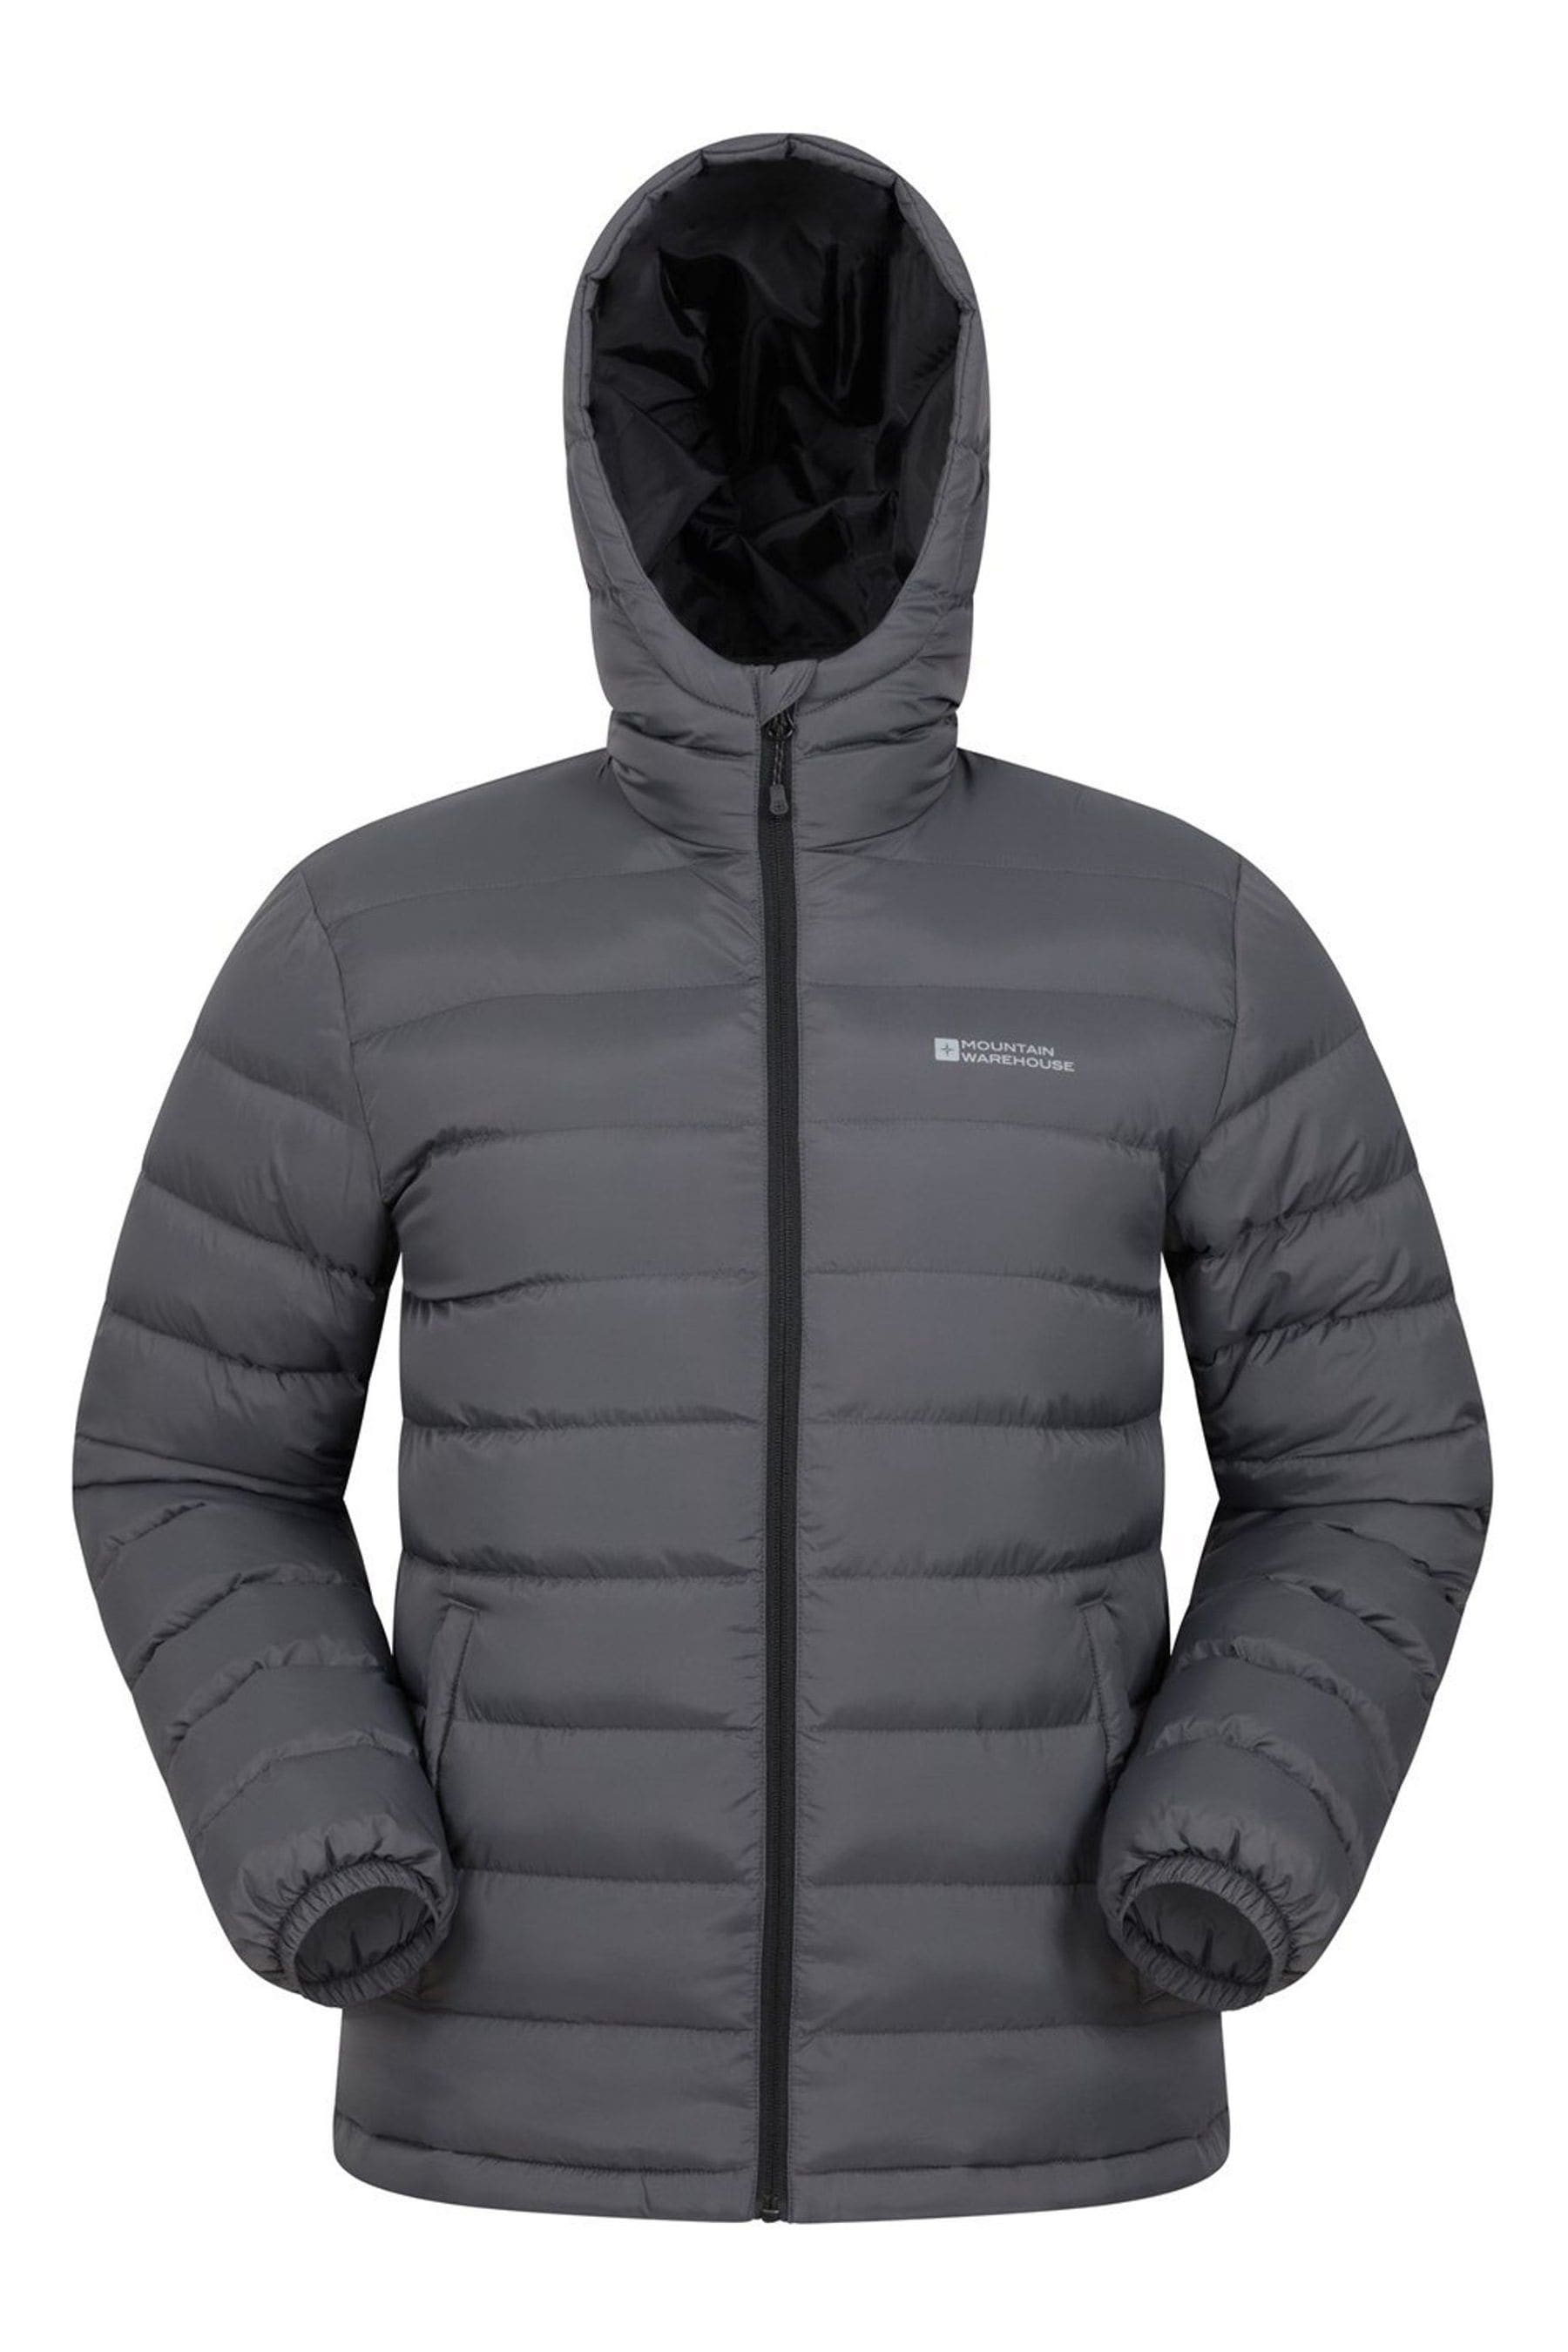 Мужская утепленная куртка Seasons Mountain Warehouse, серый куртка мужская 5 seasons febe 19 20 black